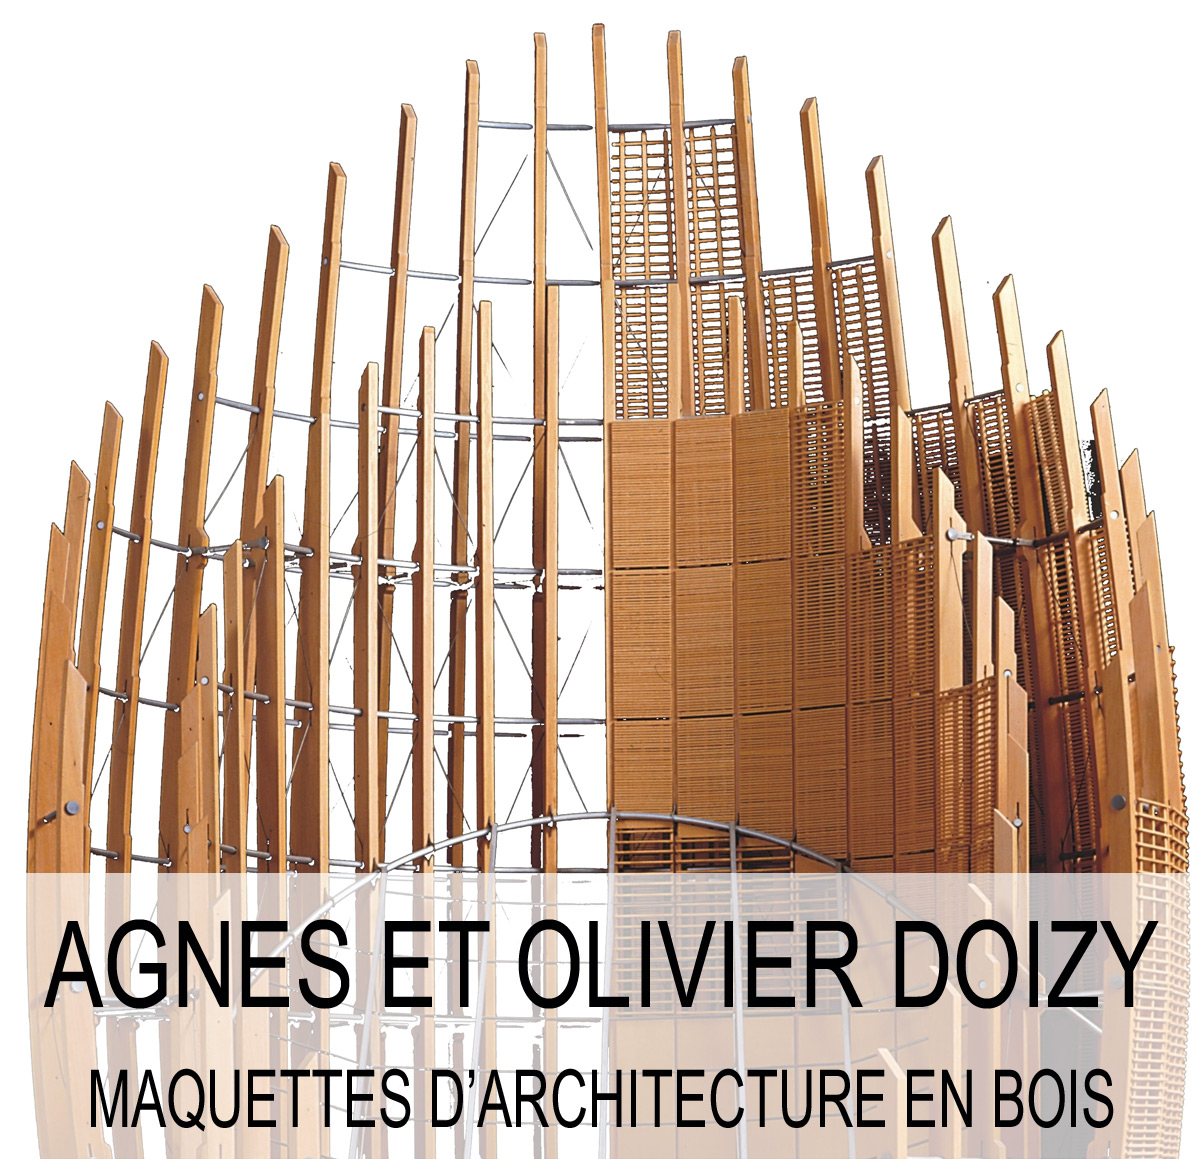 Doizy maquette d'architecture